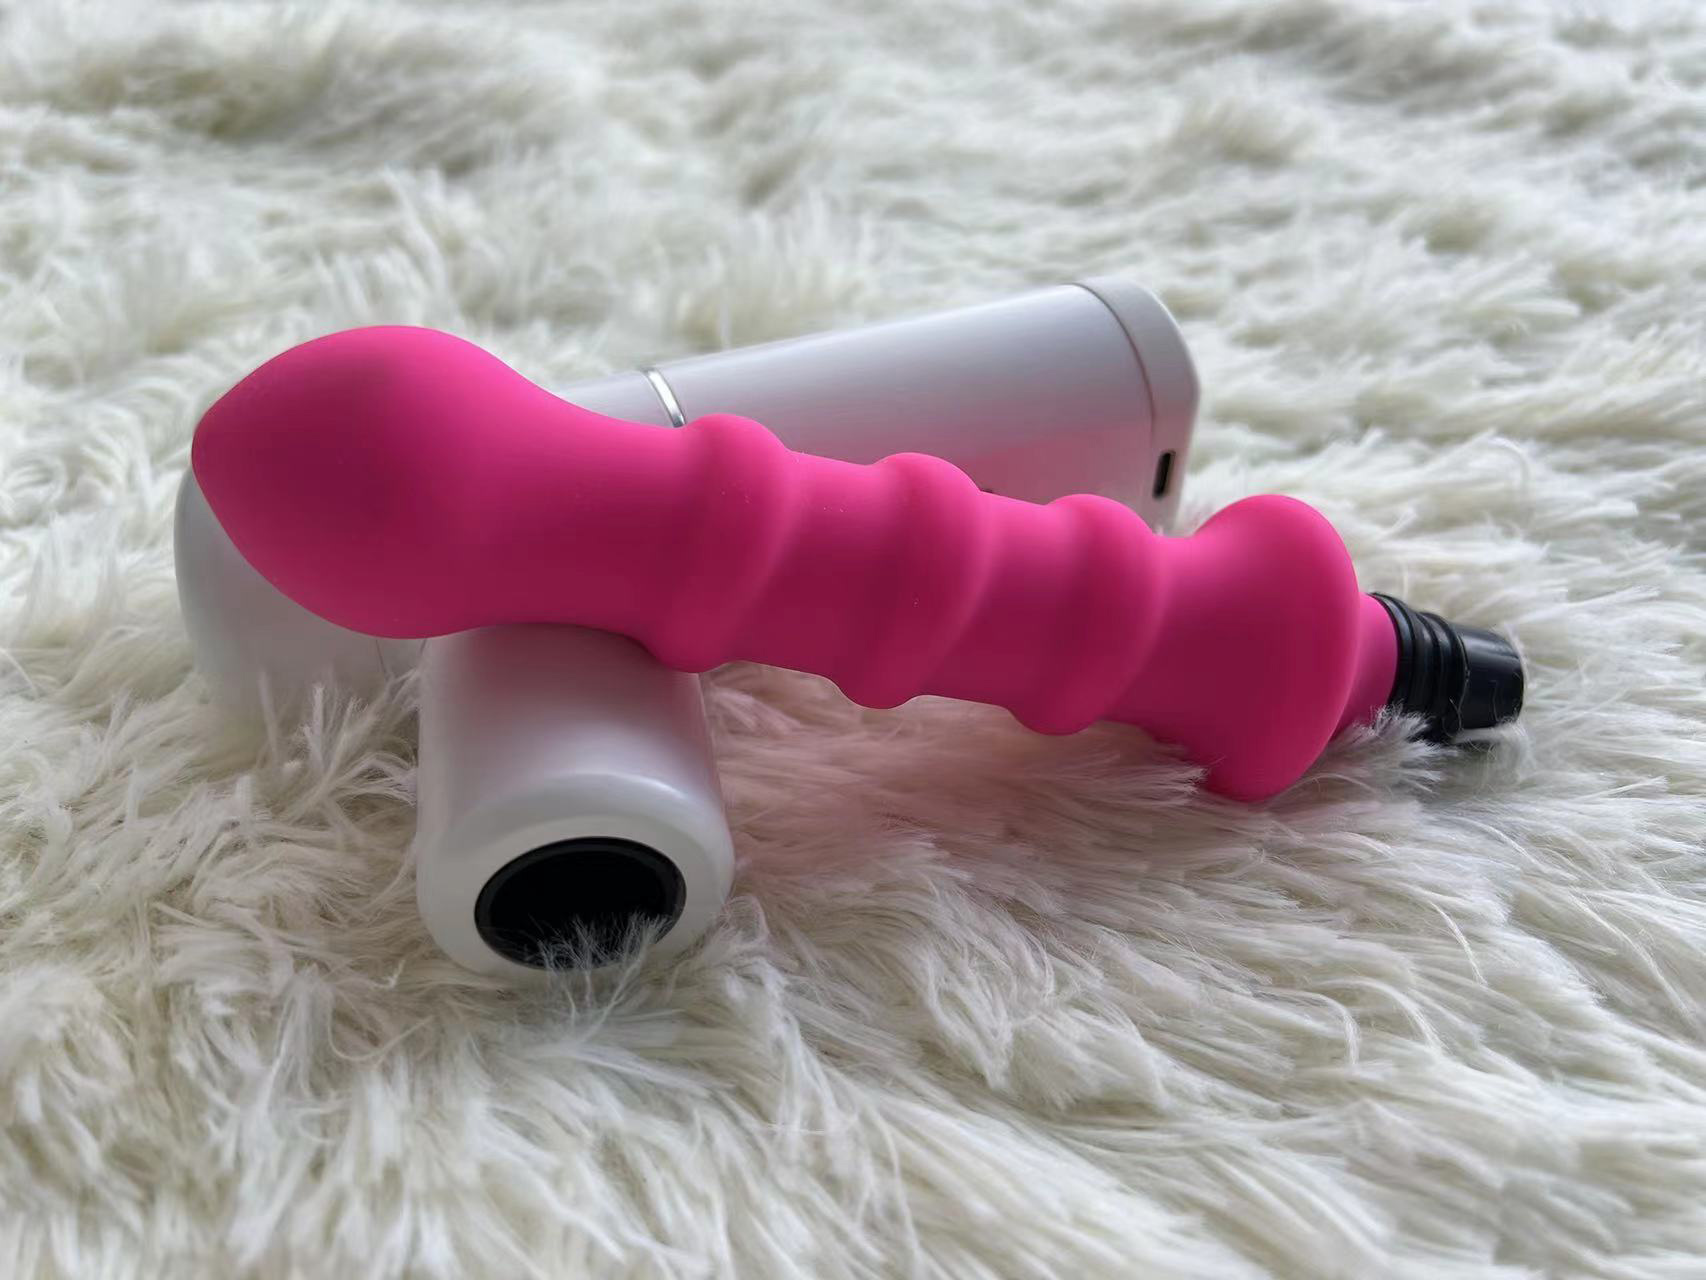 sex toy massage gun for women sex toy massage gun muscle deep relaxation sex toy massage gun customized